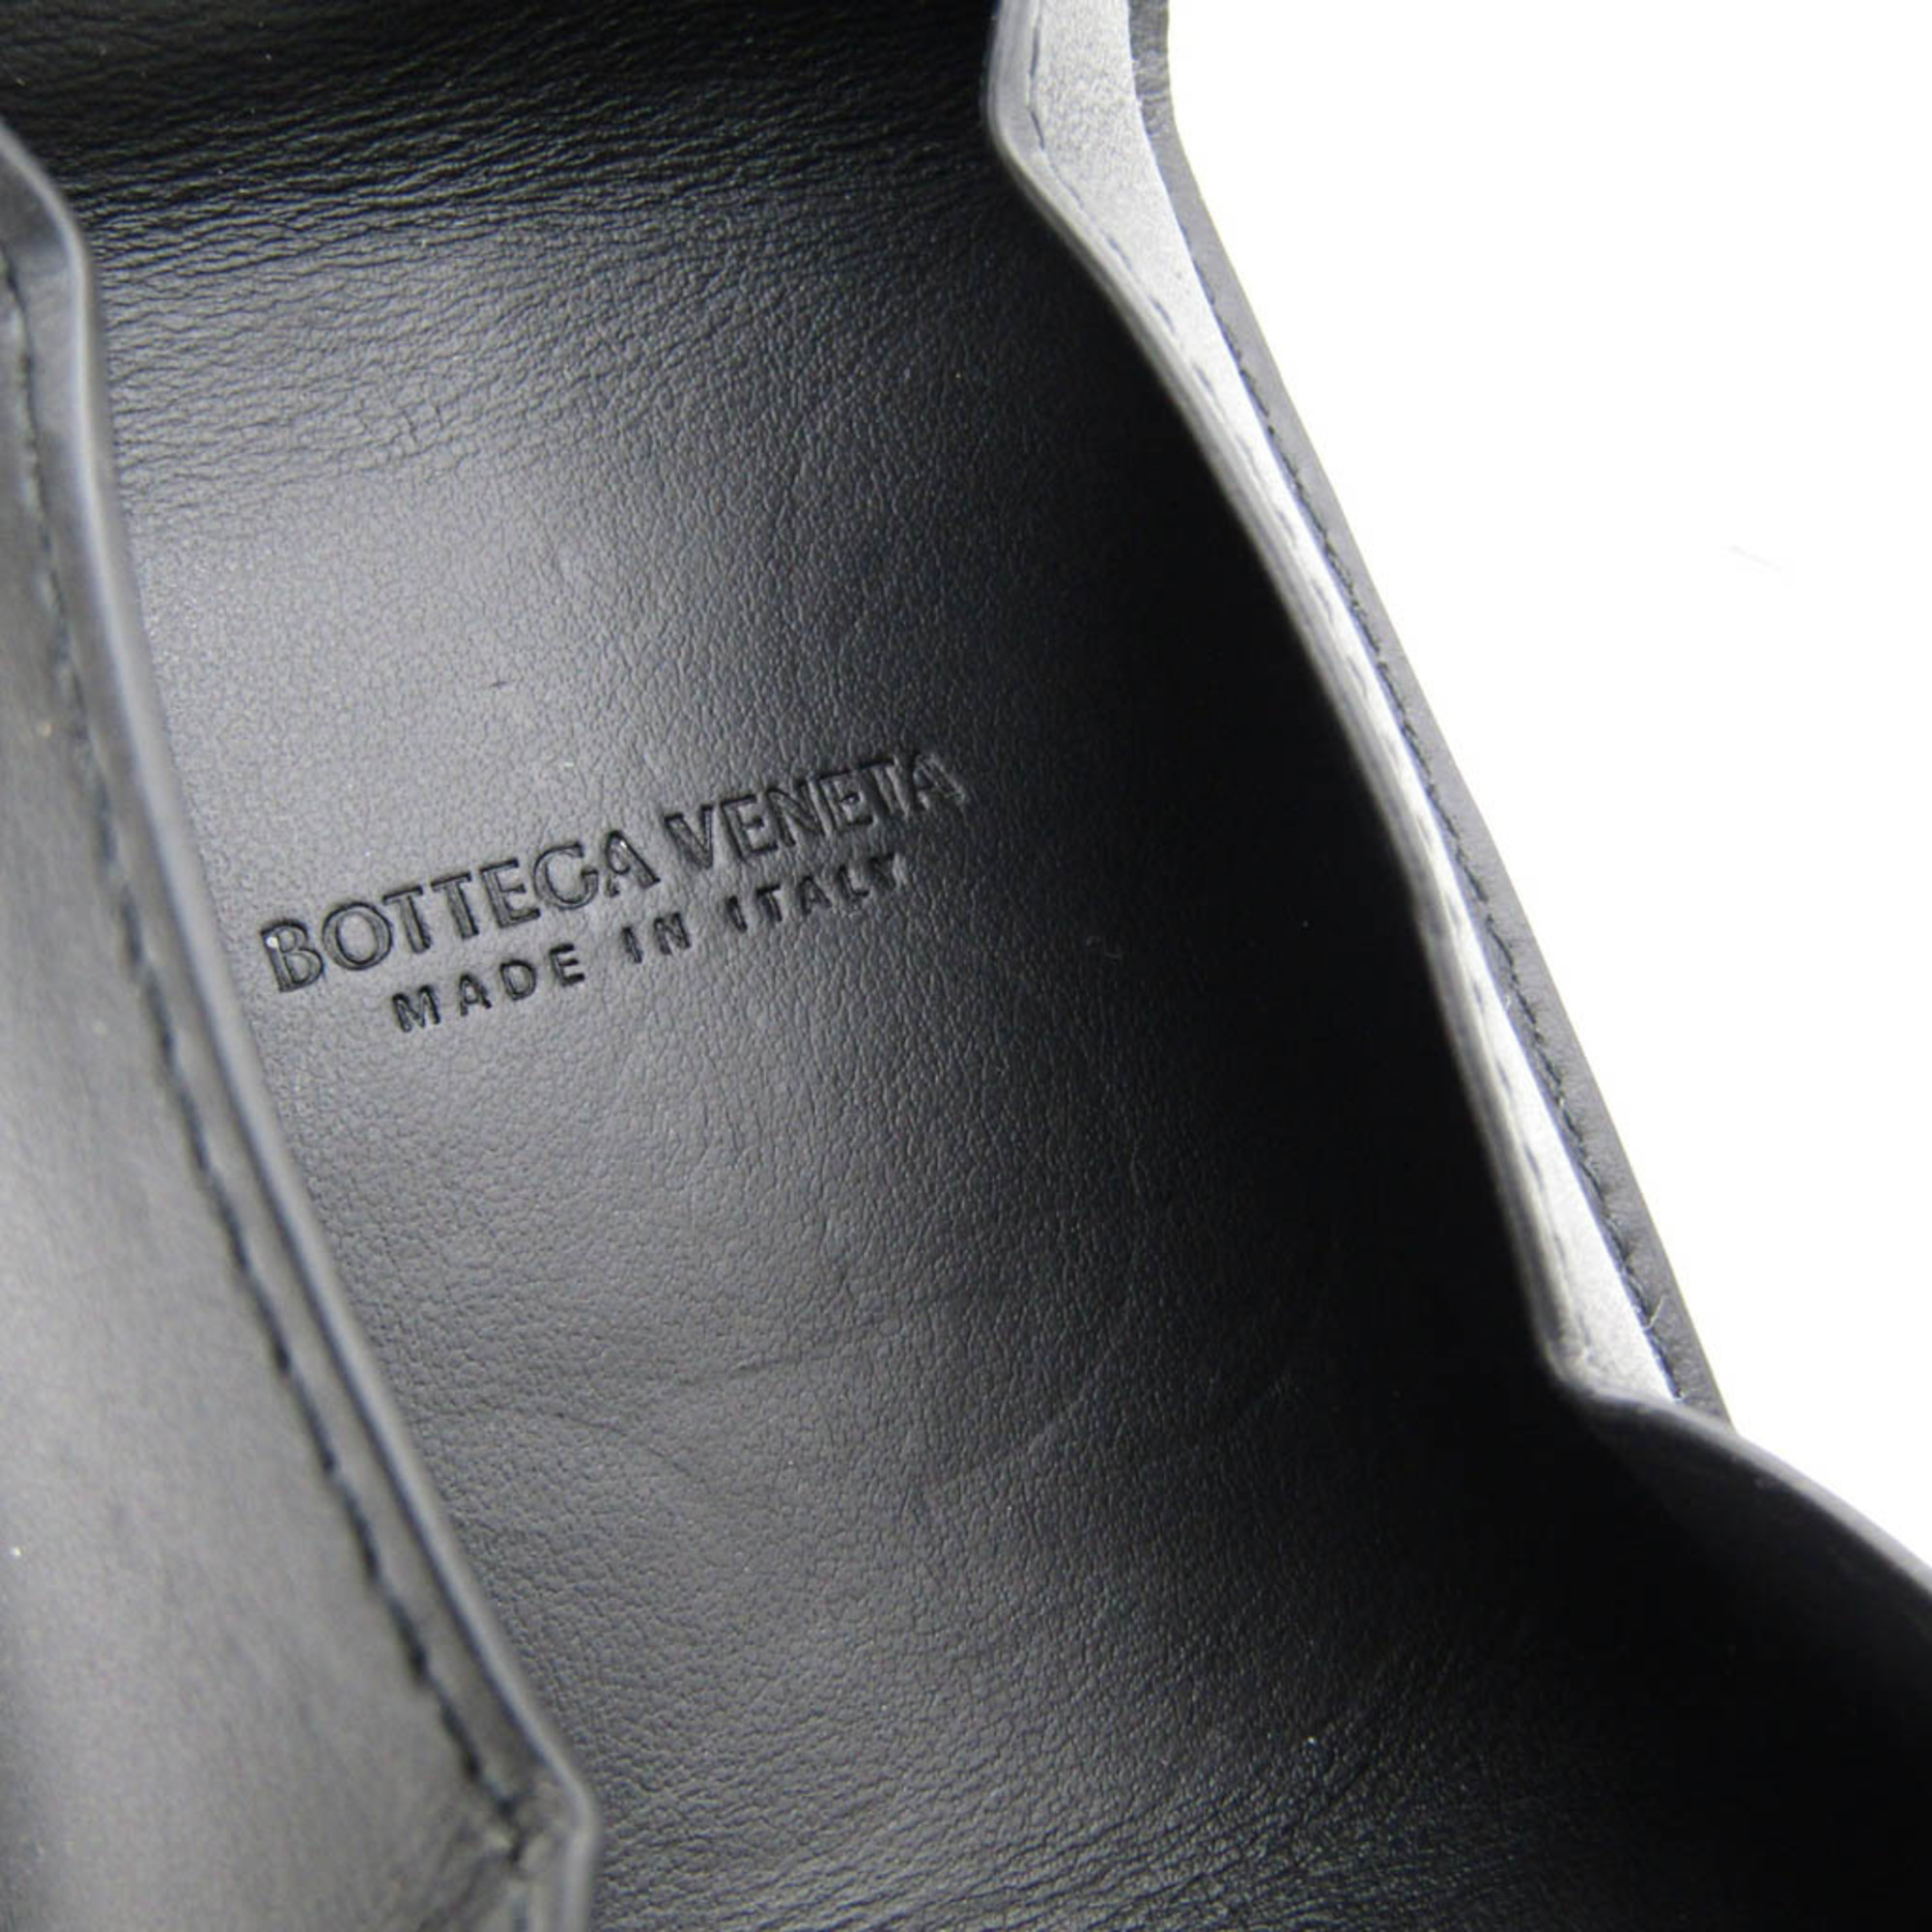 ボッテガ・ヴェネタ(Bottega Veneta) イントレチャート カセット 折り畳みコインパース 679846 レザー カードケース ブラック